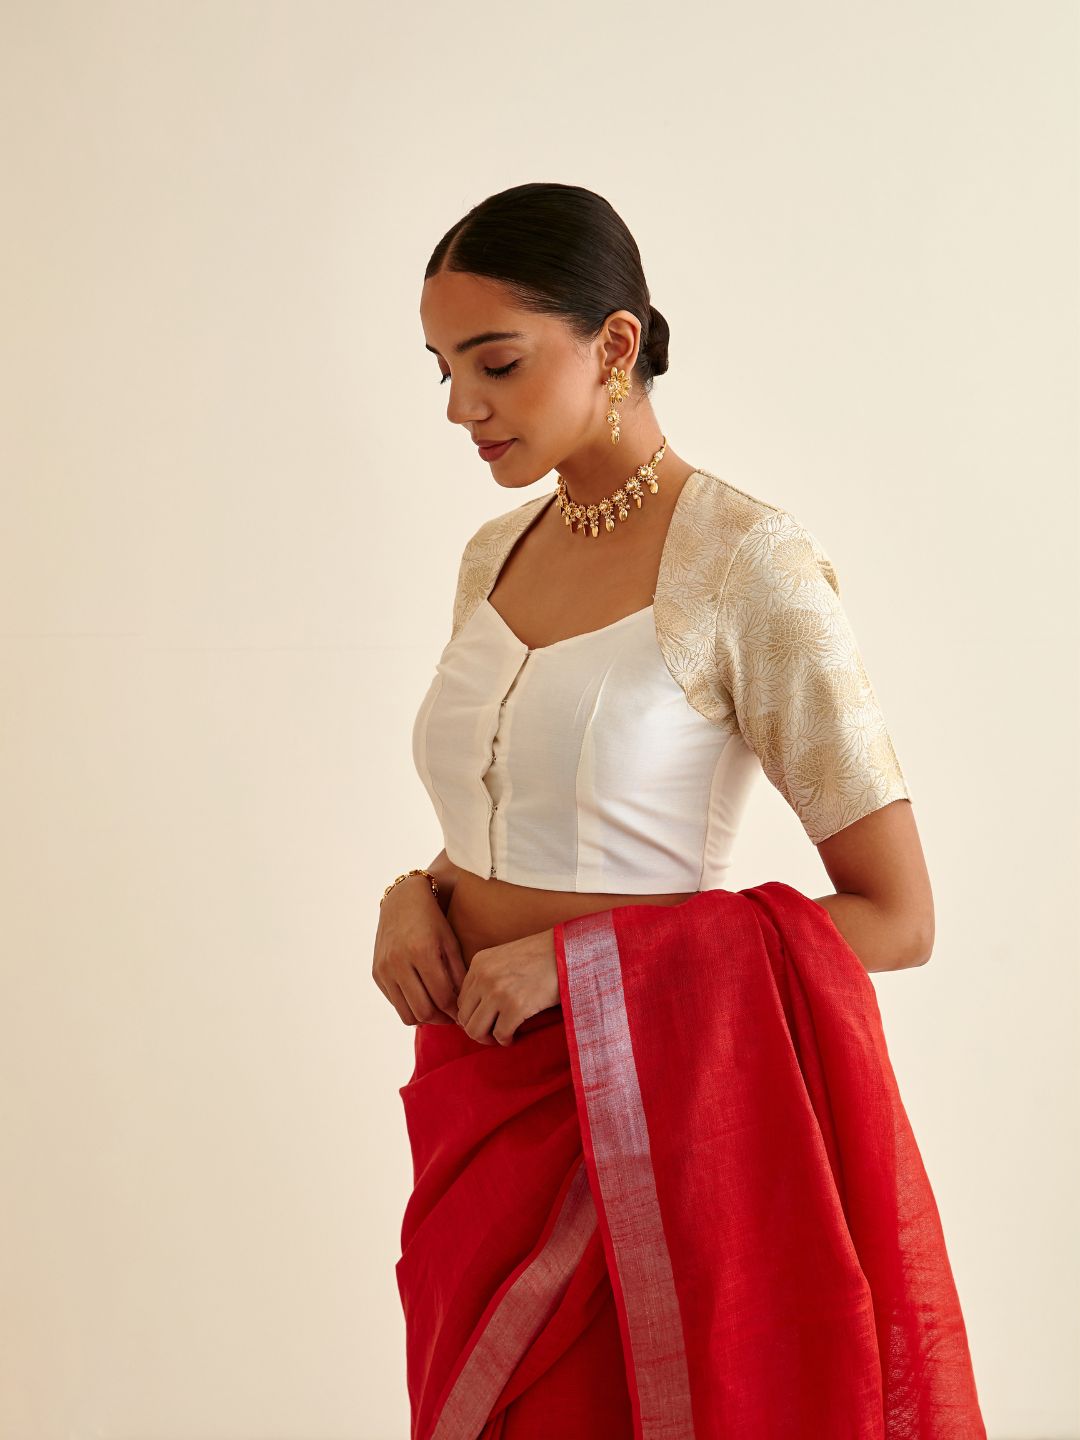 Banarasi zari bouse in Queen Anne neckline-soft white